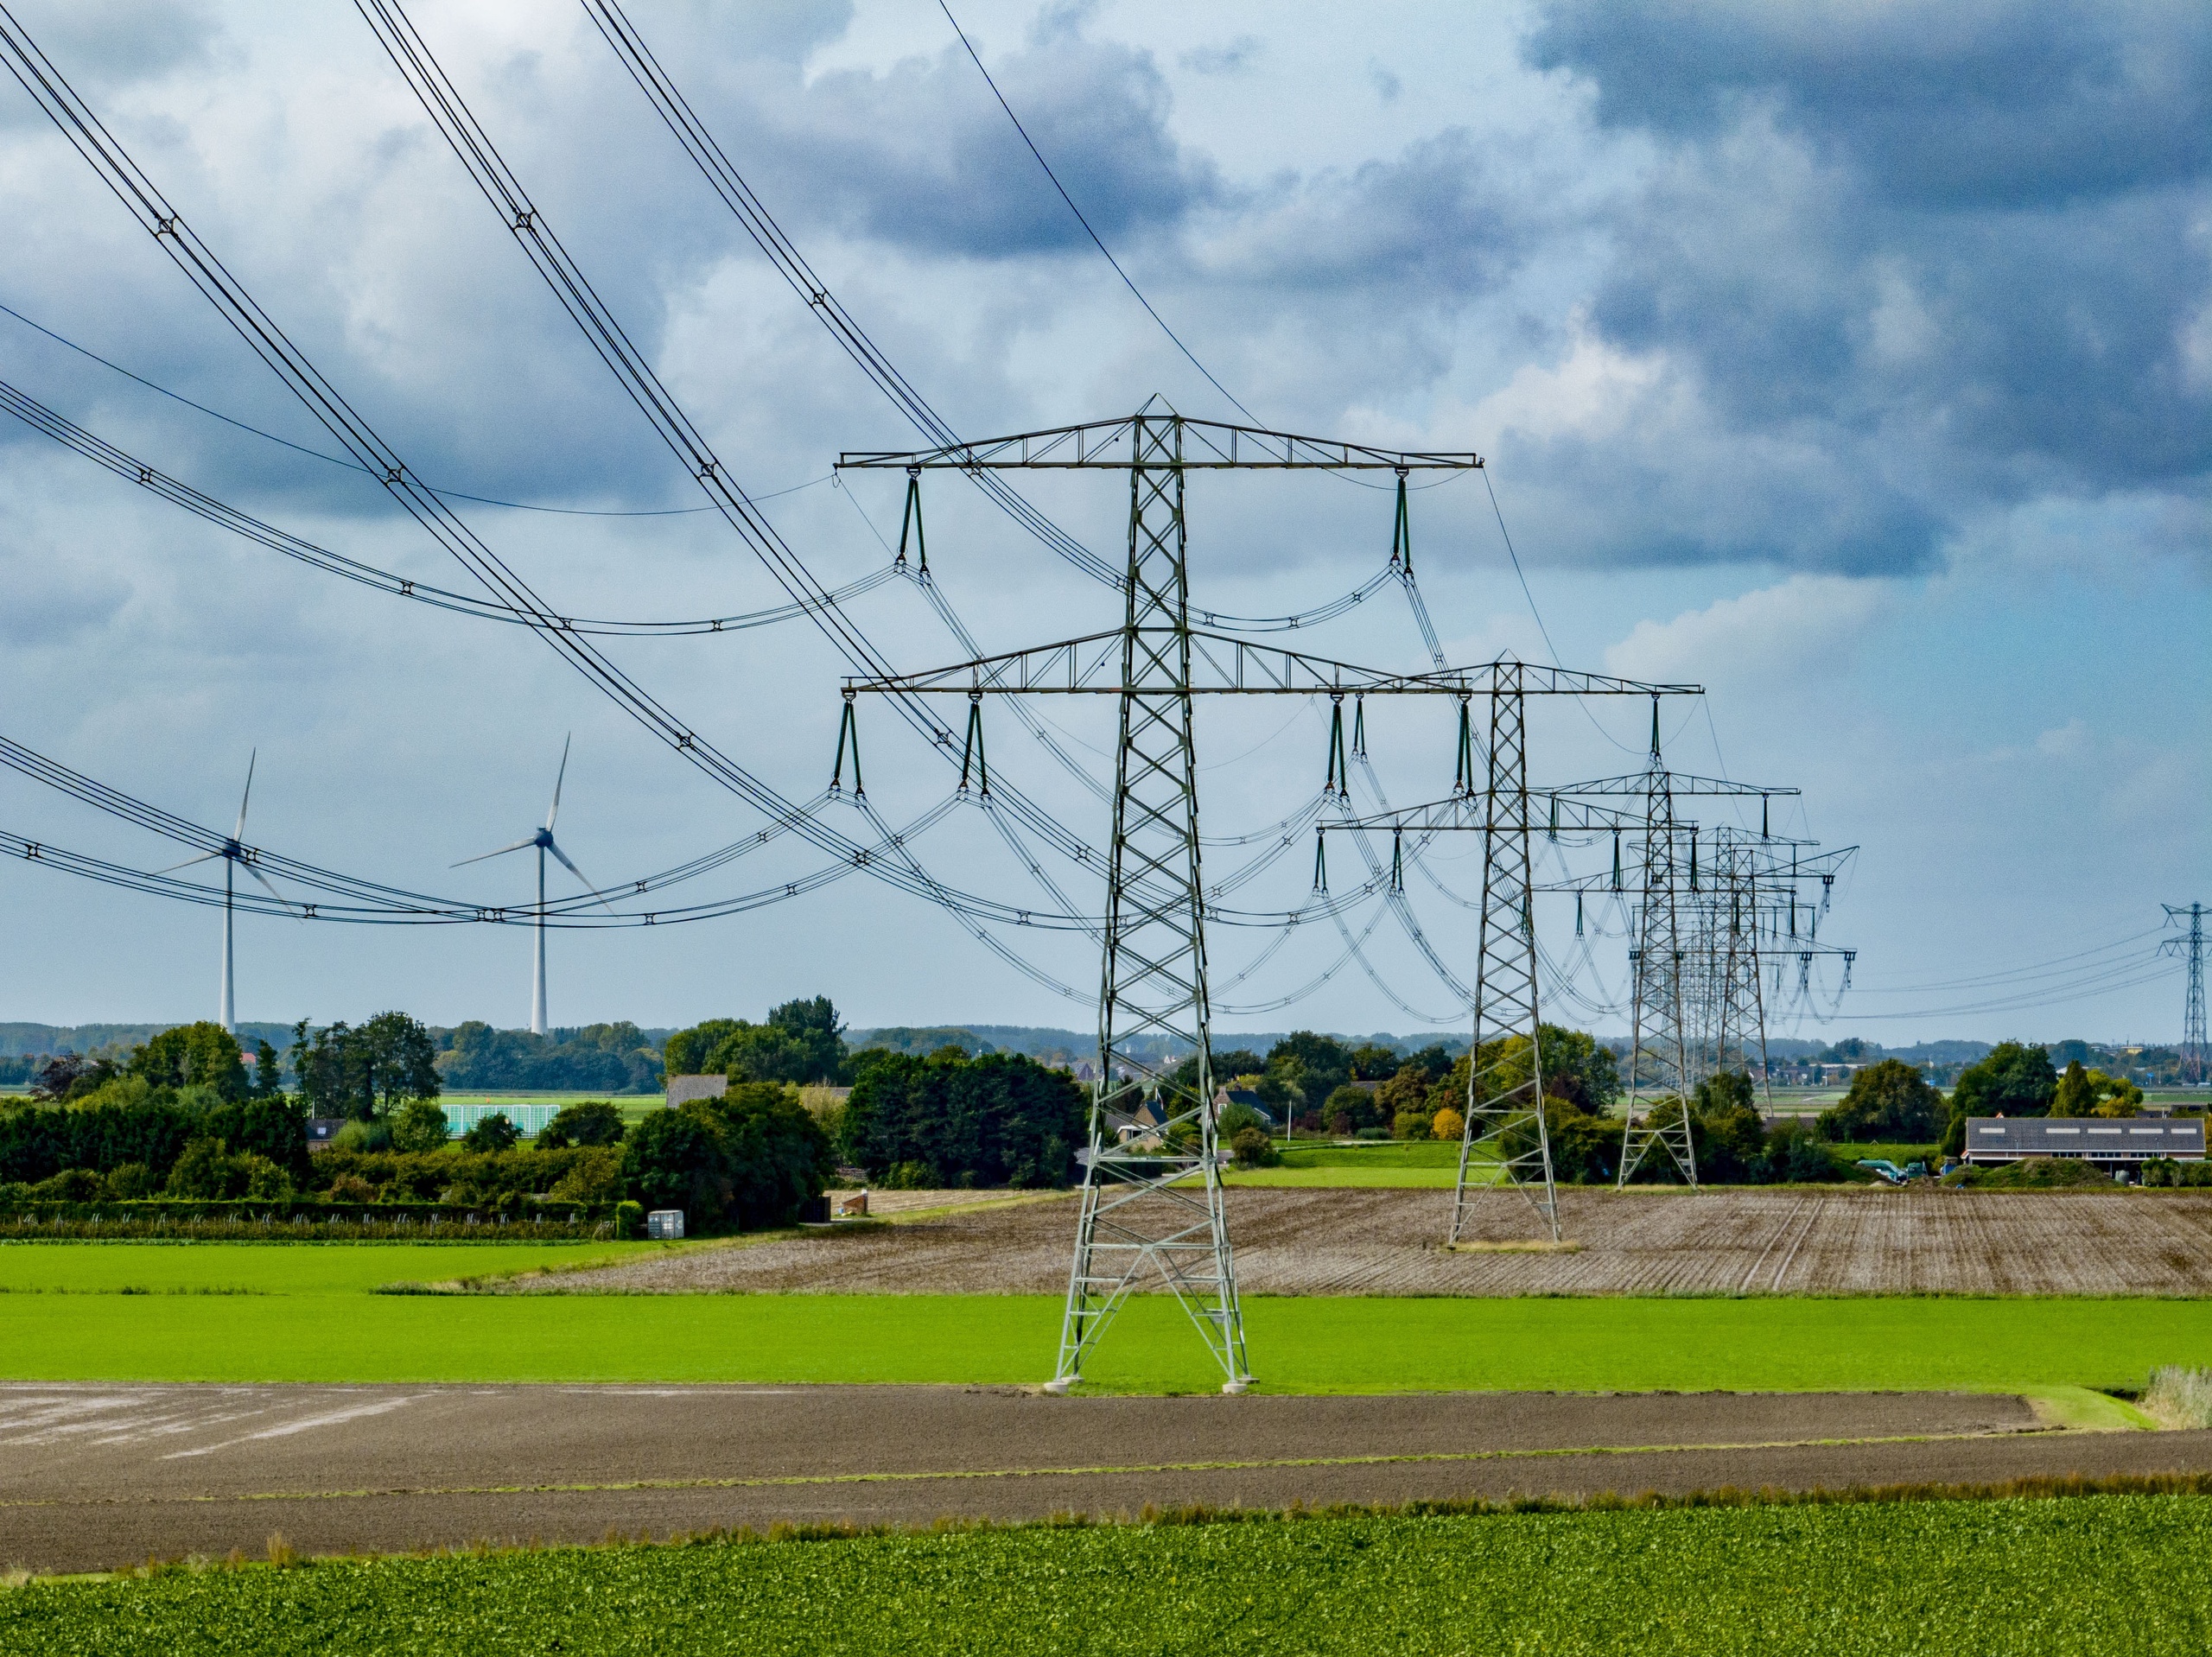 NIEUW BIJERLAND - Hoogspanningsmasten zijn masten in het hoogspanningsnet waaraan de kabels bevestigd zijn voor het transport van grote hoeveelheden elektrische energie over relatief grote afstanden in het landschap . stroomnet ANP / Hollandse Hoogte / Robin Utrecht